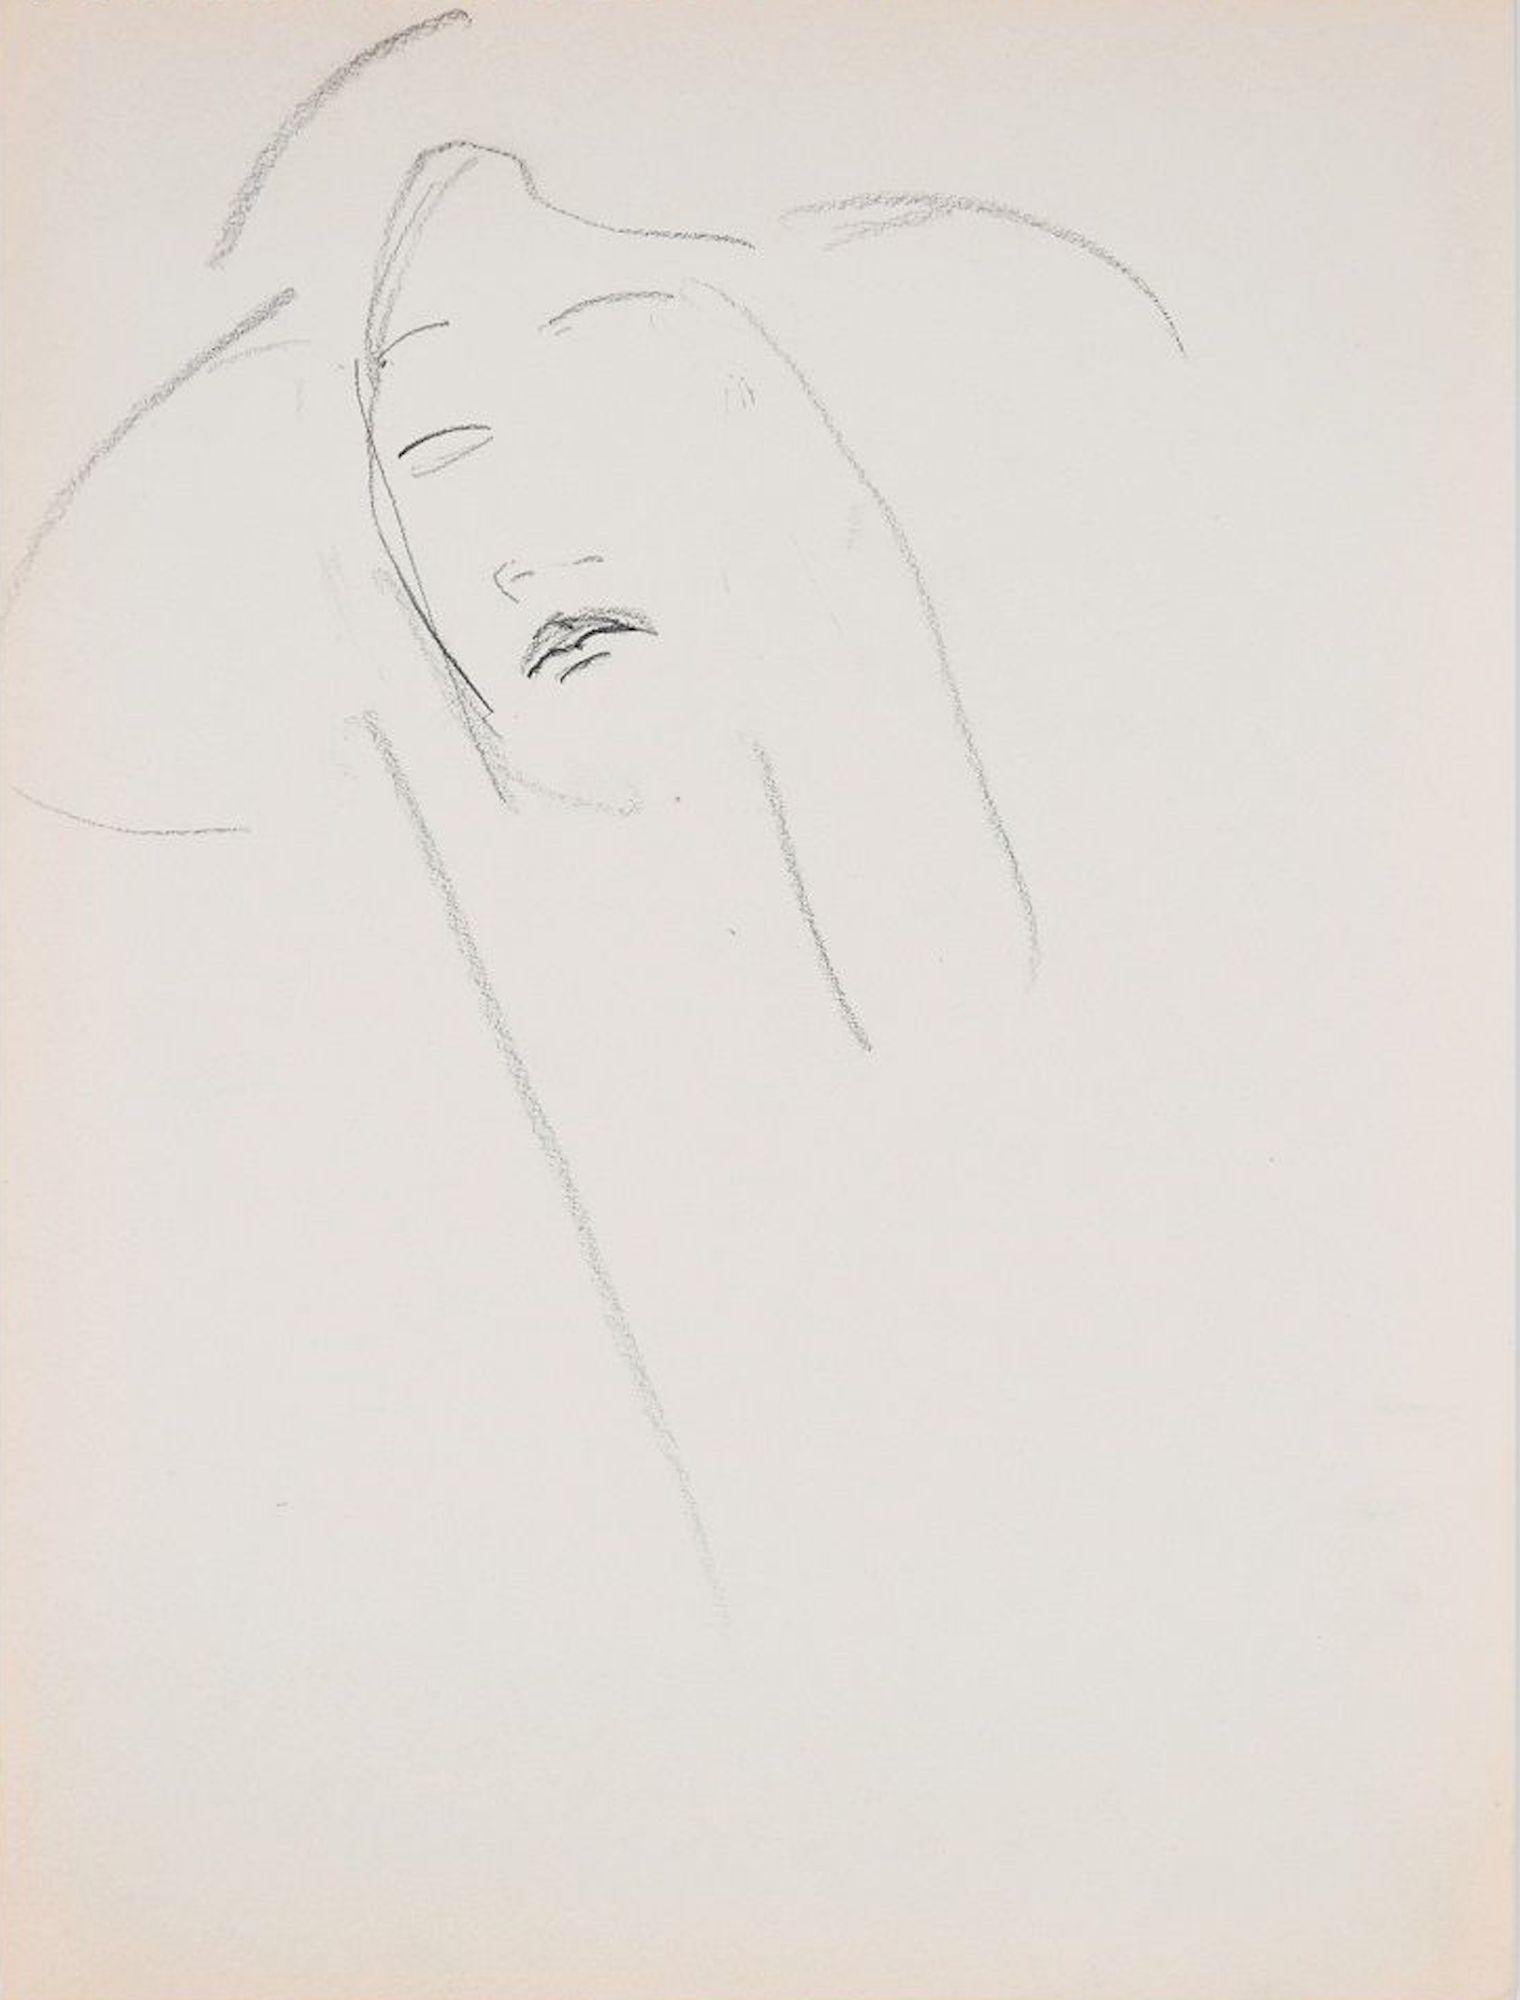 Portrait de fille est un dessin original au crayon sur papier ivoire réalisé par Flor David dans les années 1950.

Il s'agit d'un dessin original réalisé sur une page de bloc notes et il représente une esquisse d'un portrait de fille.

Bonnes